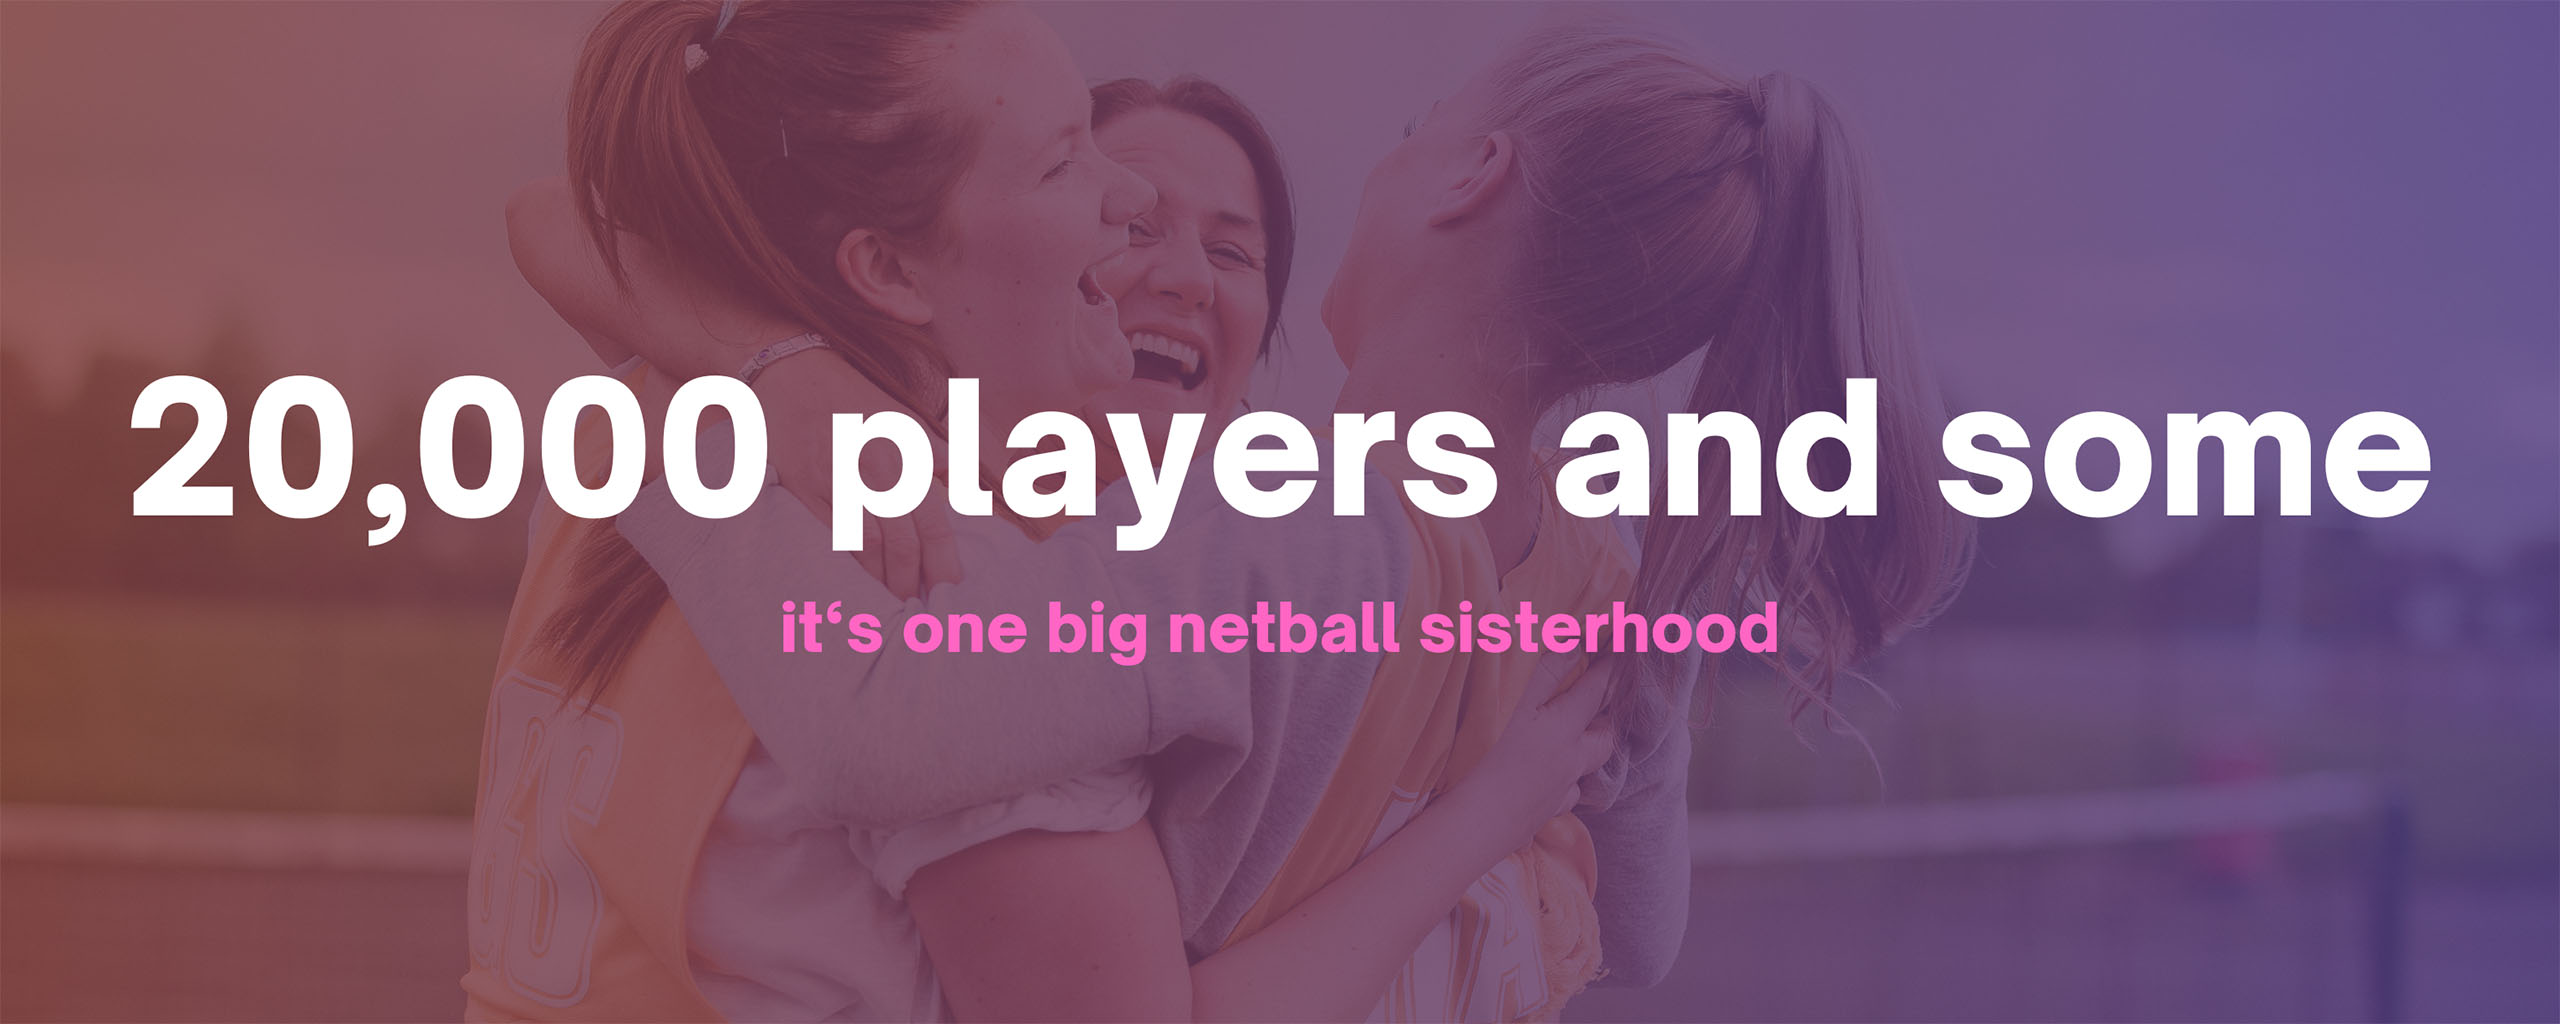 womens netball